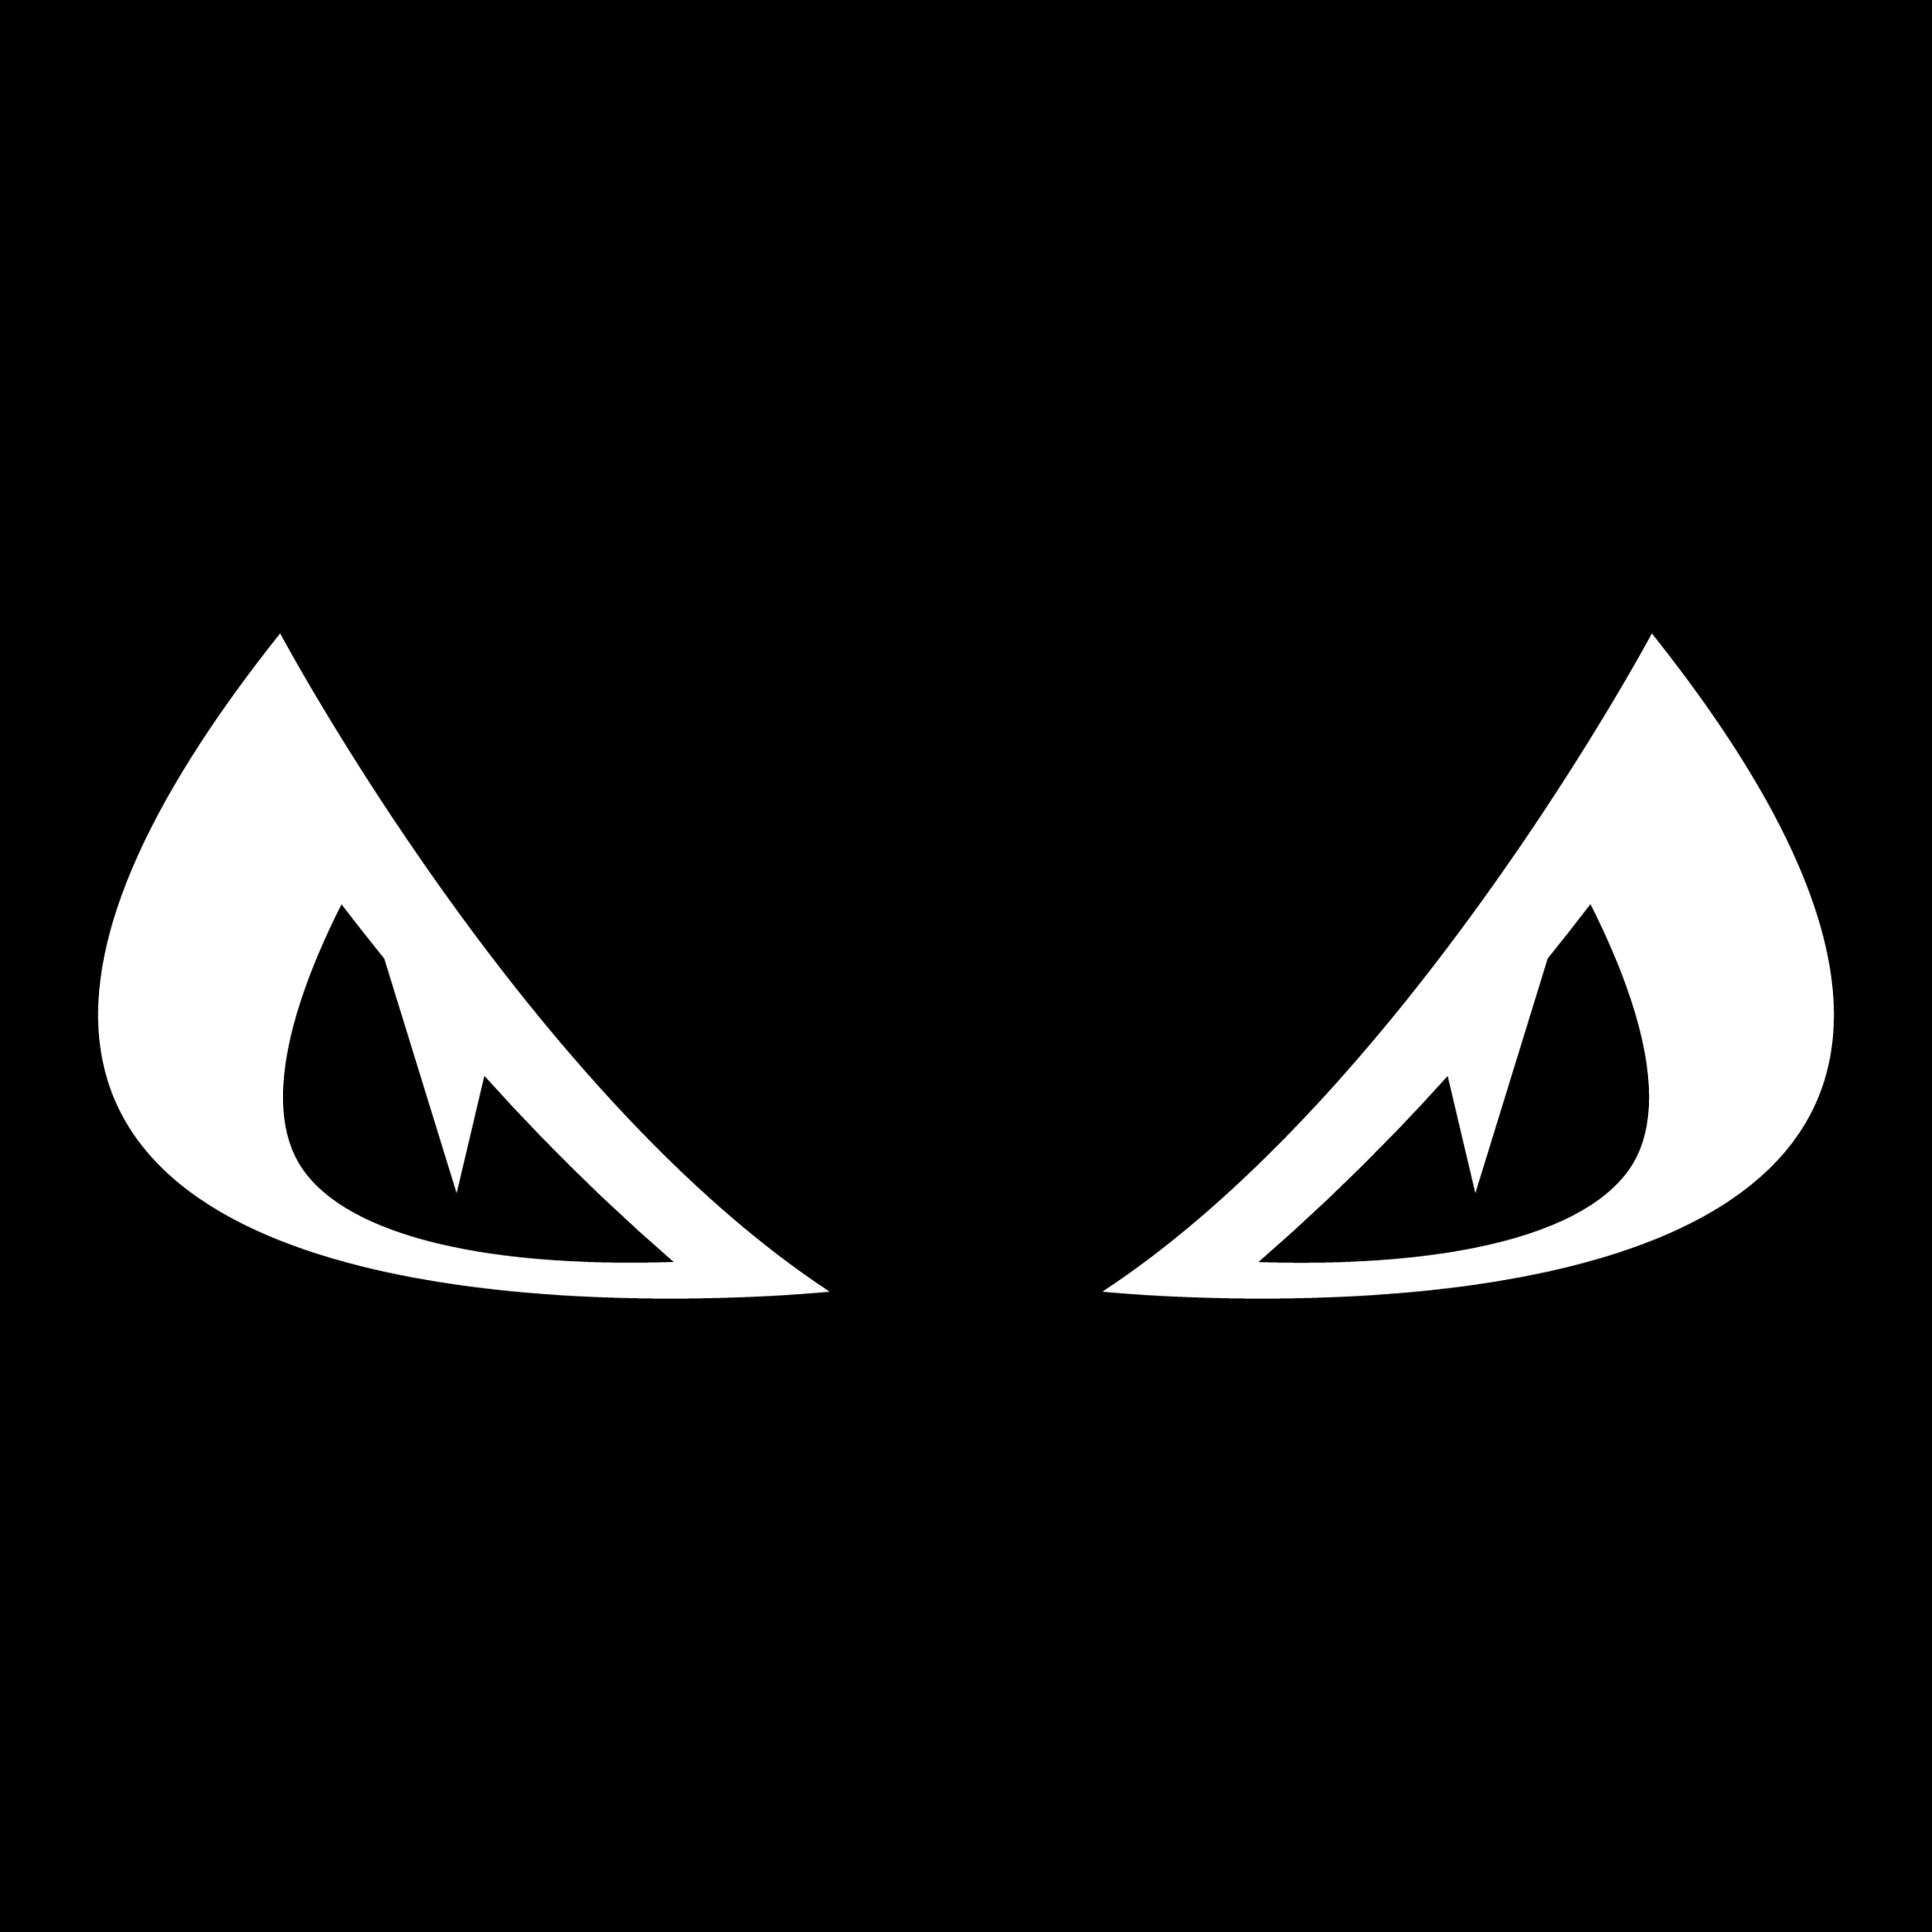 evil eyes icon